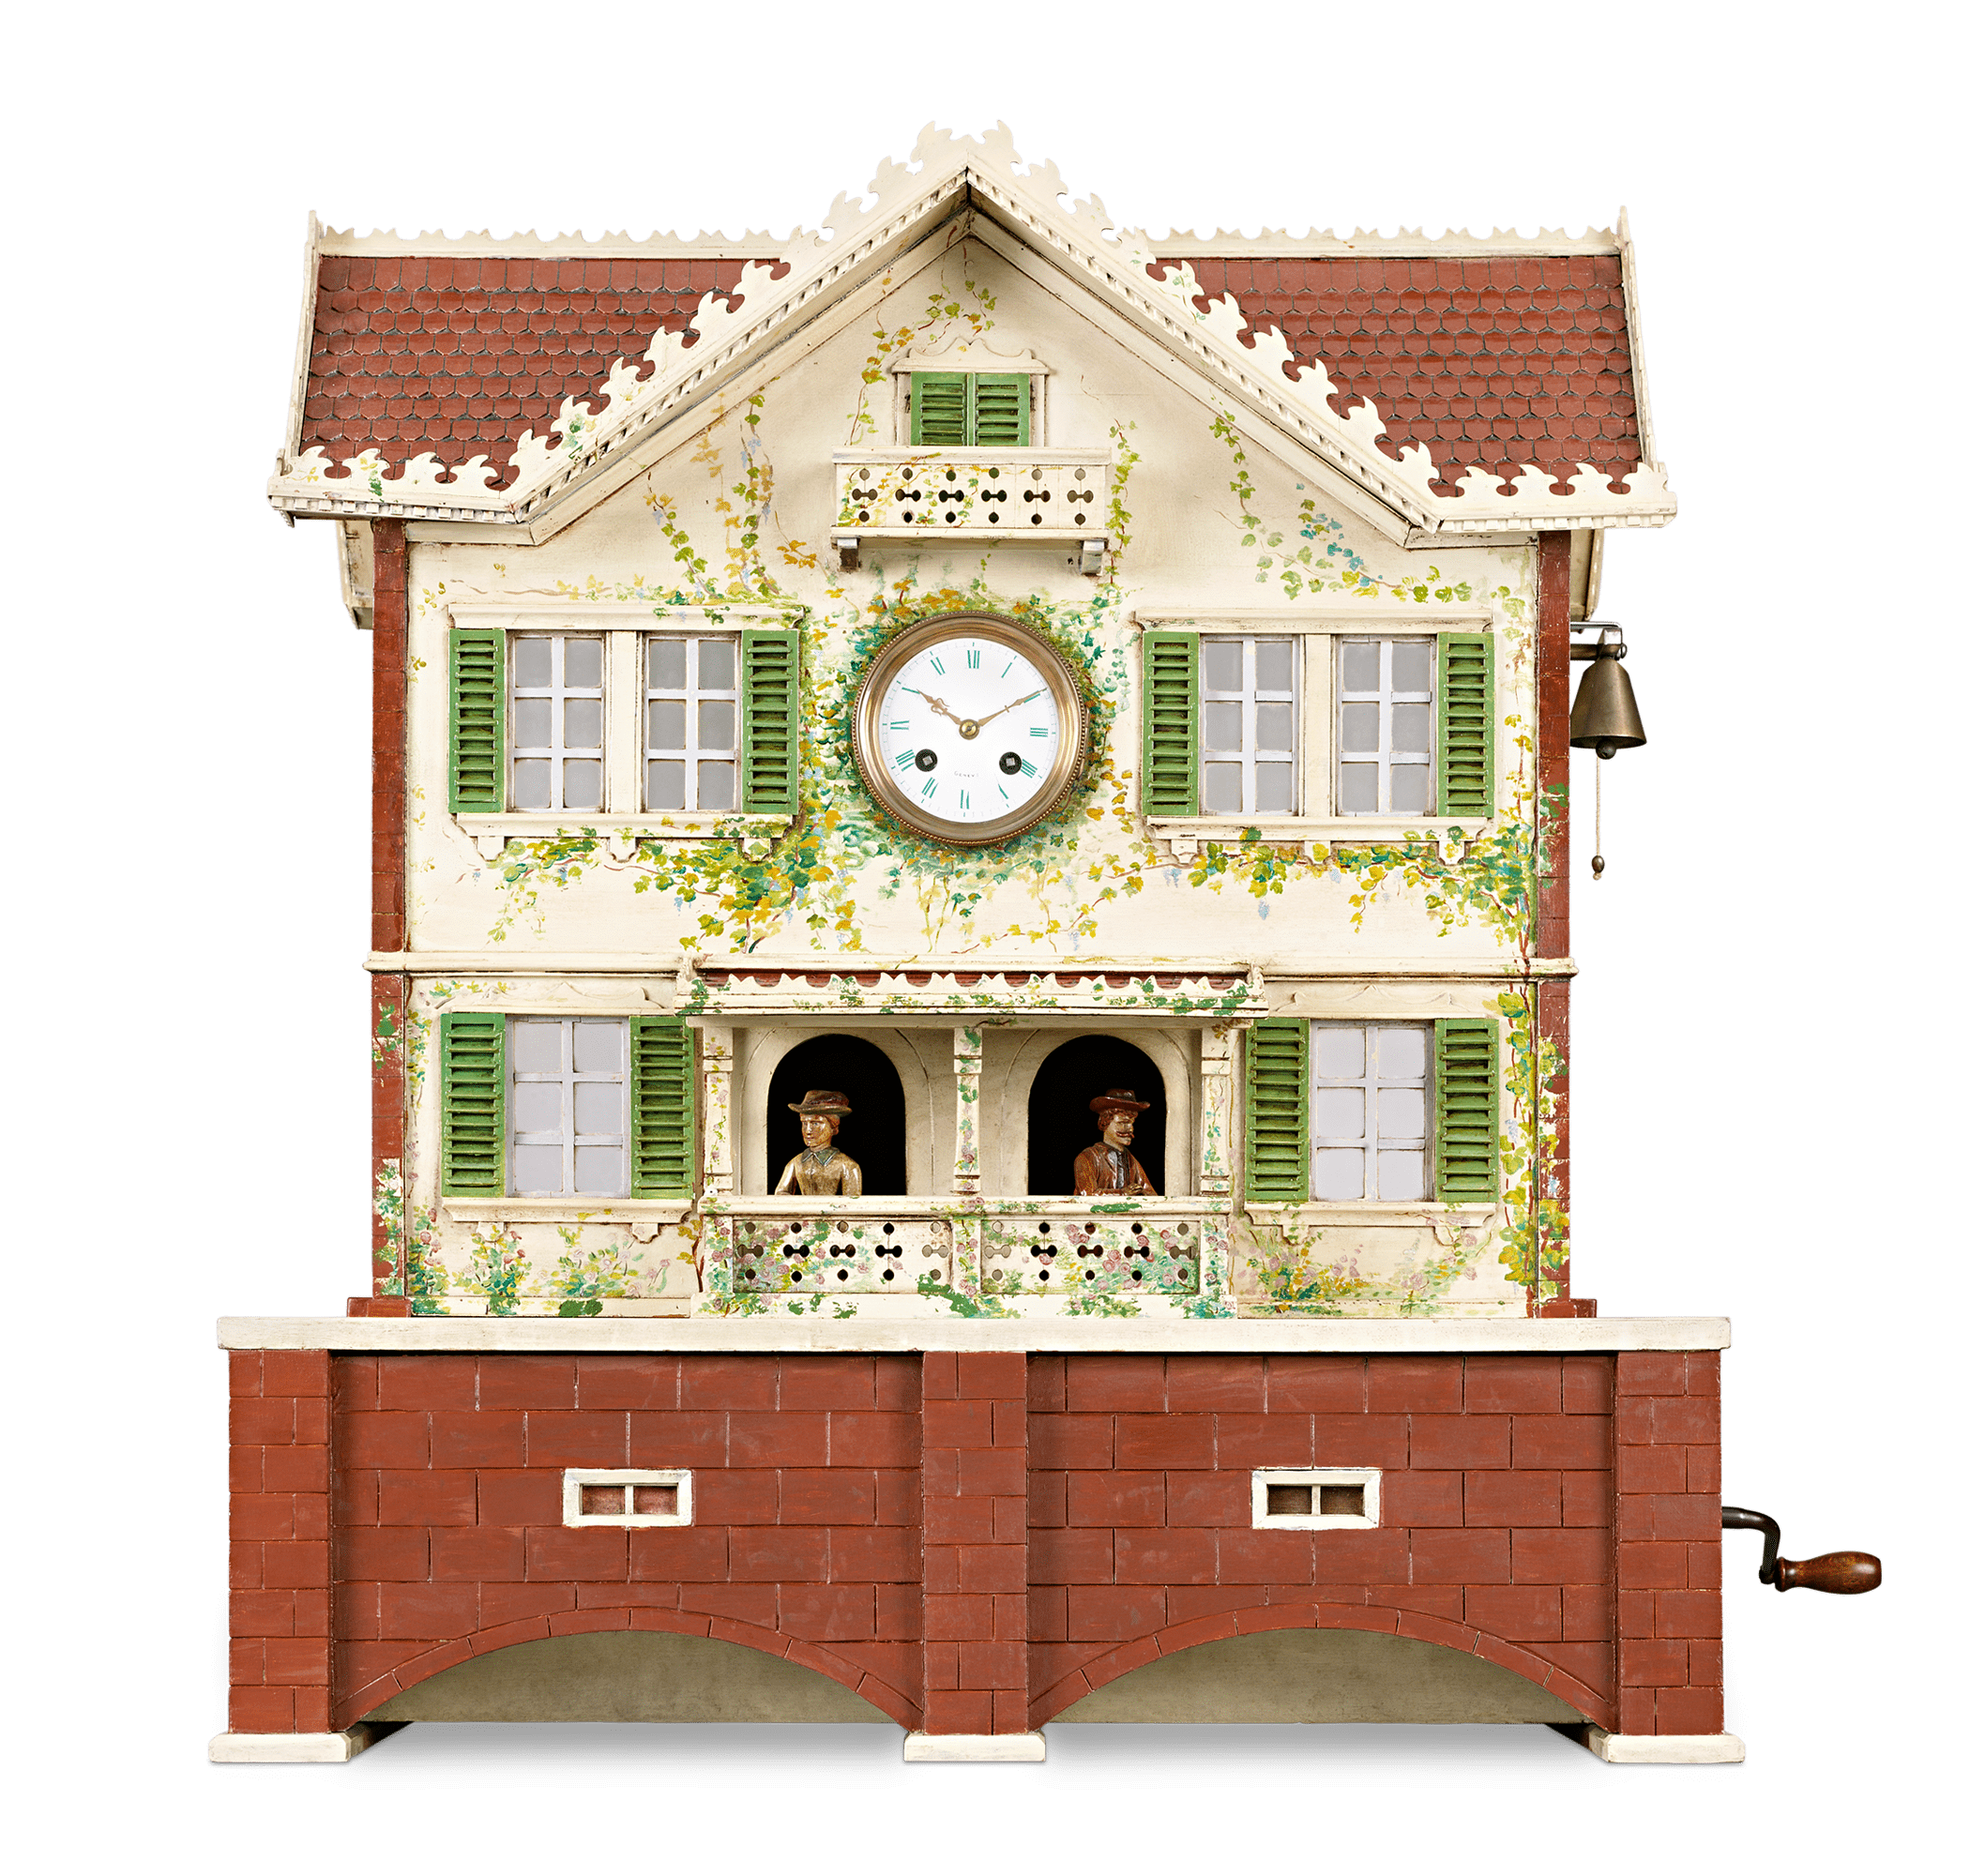 Automaton Clock and Music Box House